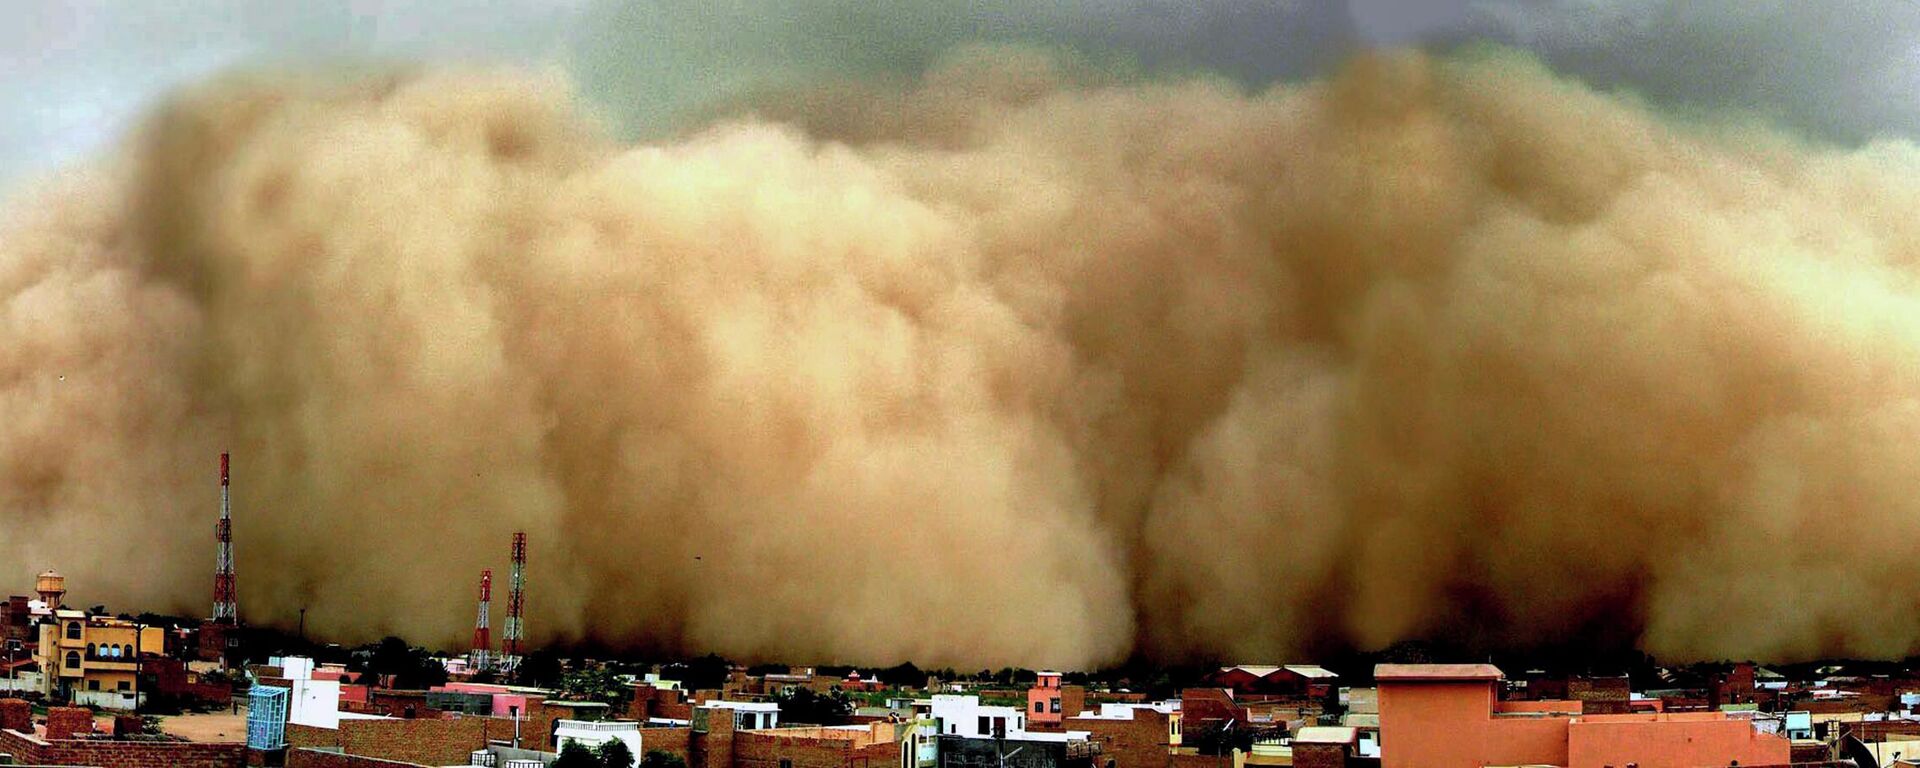 Песчаная буря накрыла пустынный город Биканер в штате Раджастхан на западе Индии, 2010 год - Sputnik Кыргызстан, 1920, 29.05.2022